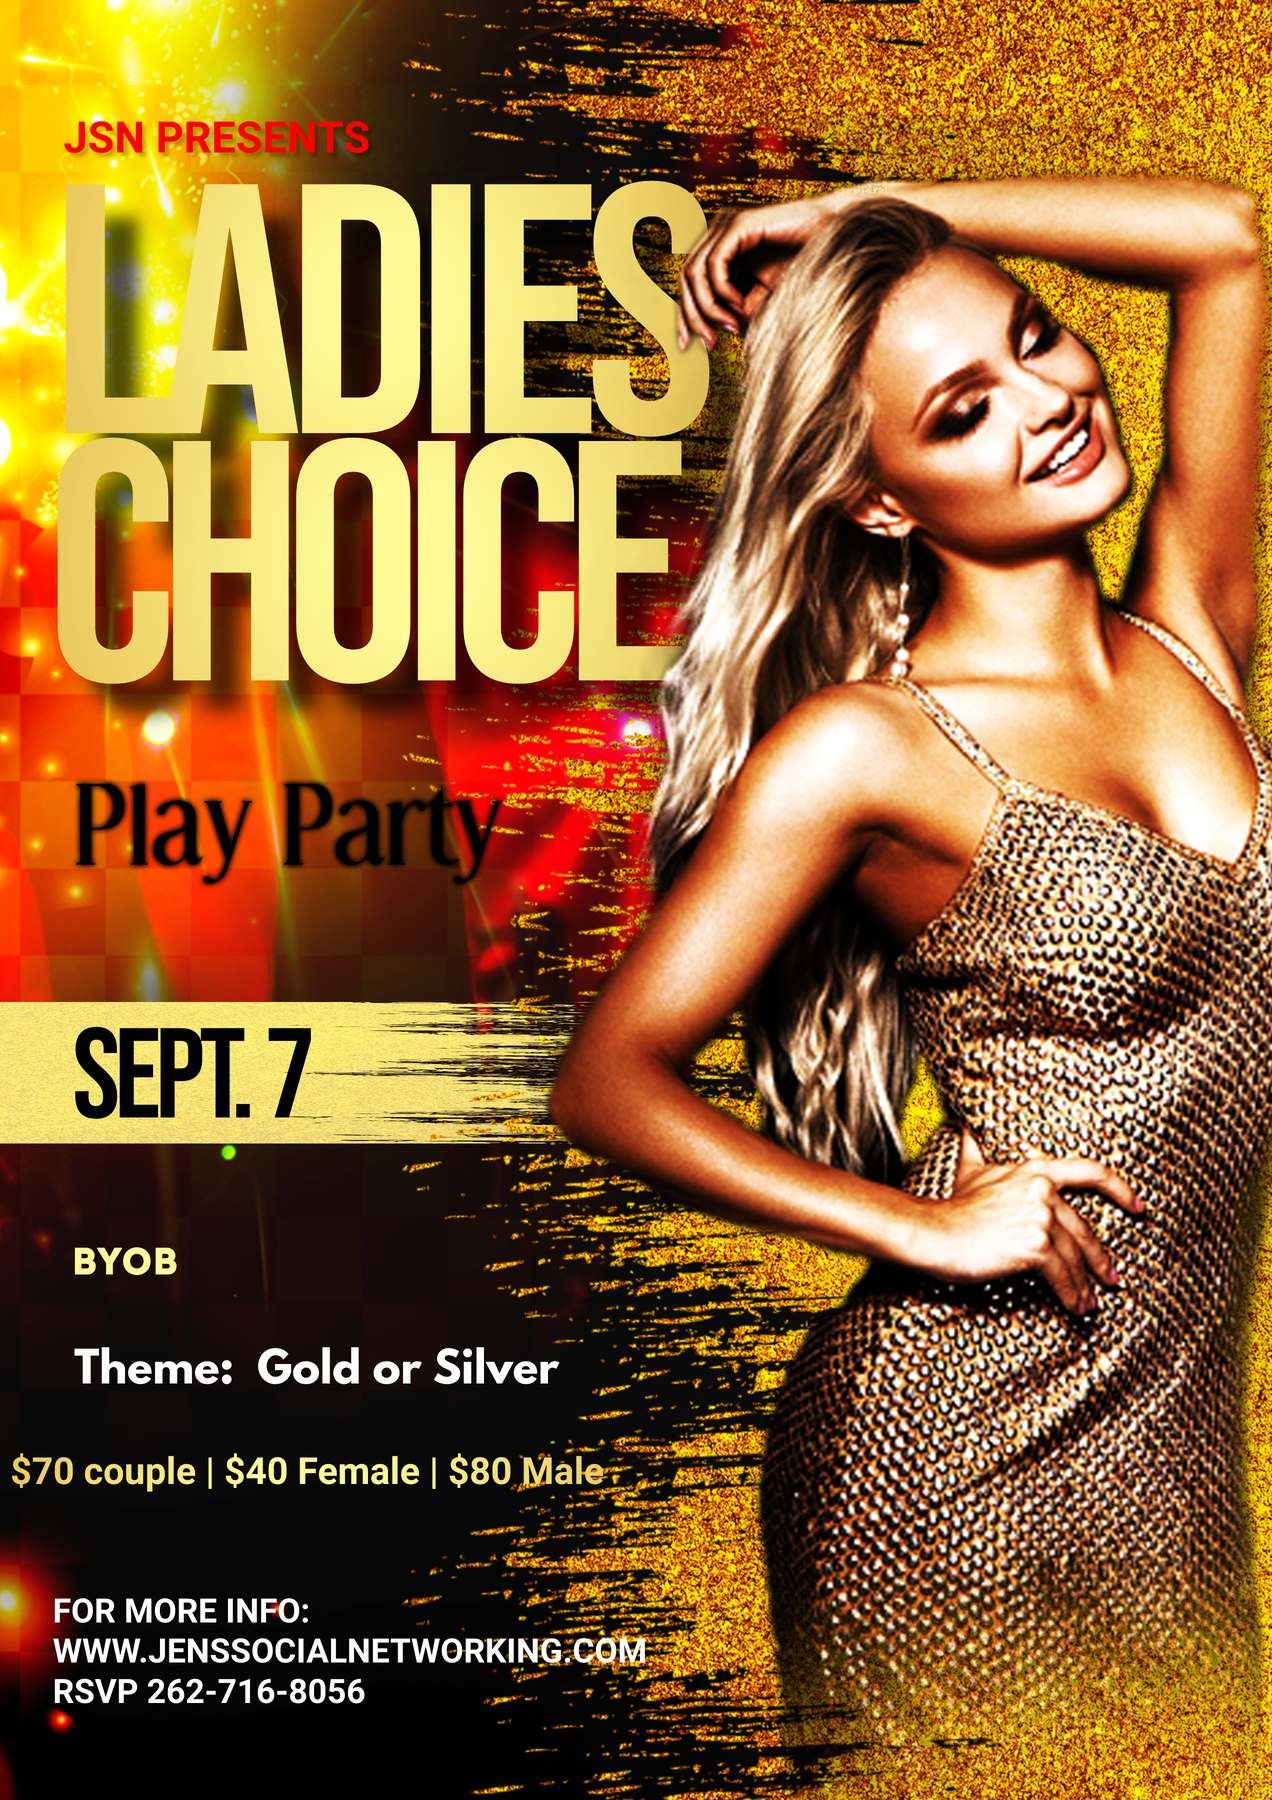 Ladies Choice Play Party Full Swap Play Event on sept. 07, 19:00@Embassy Suites by Hilton - Achetez des billets et obtenez des informations surJen's Social Networking 